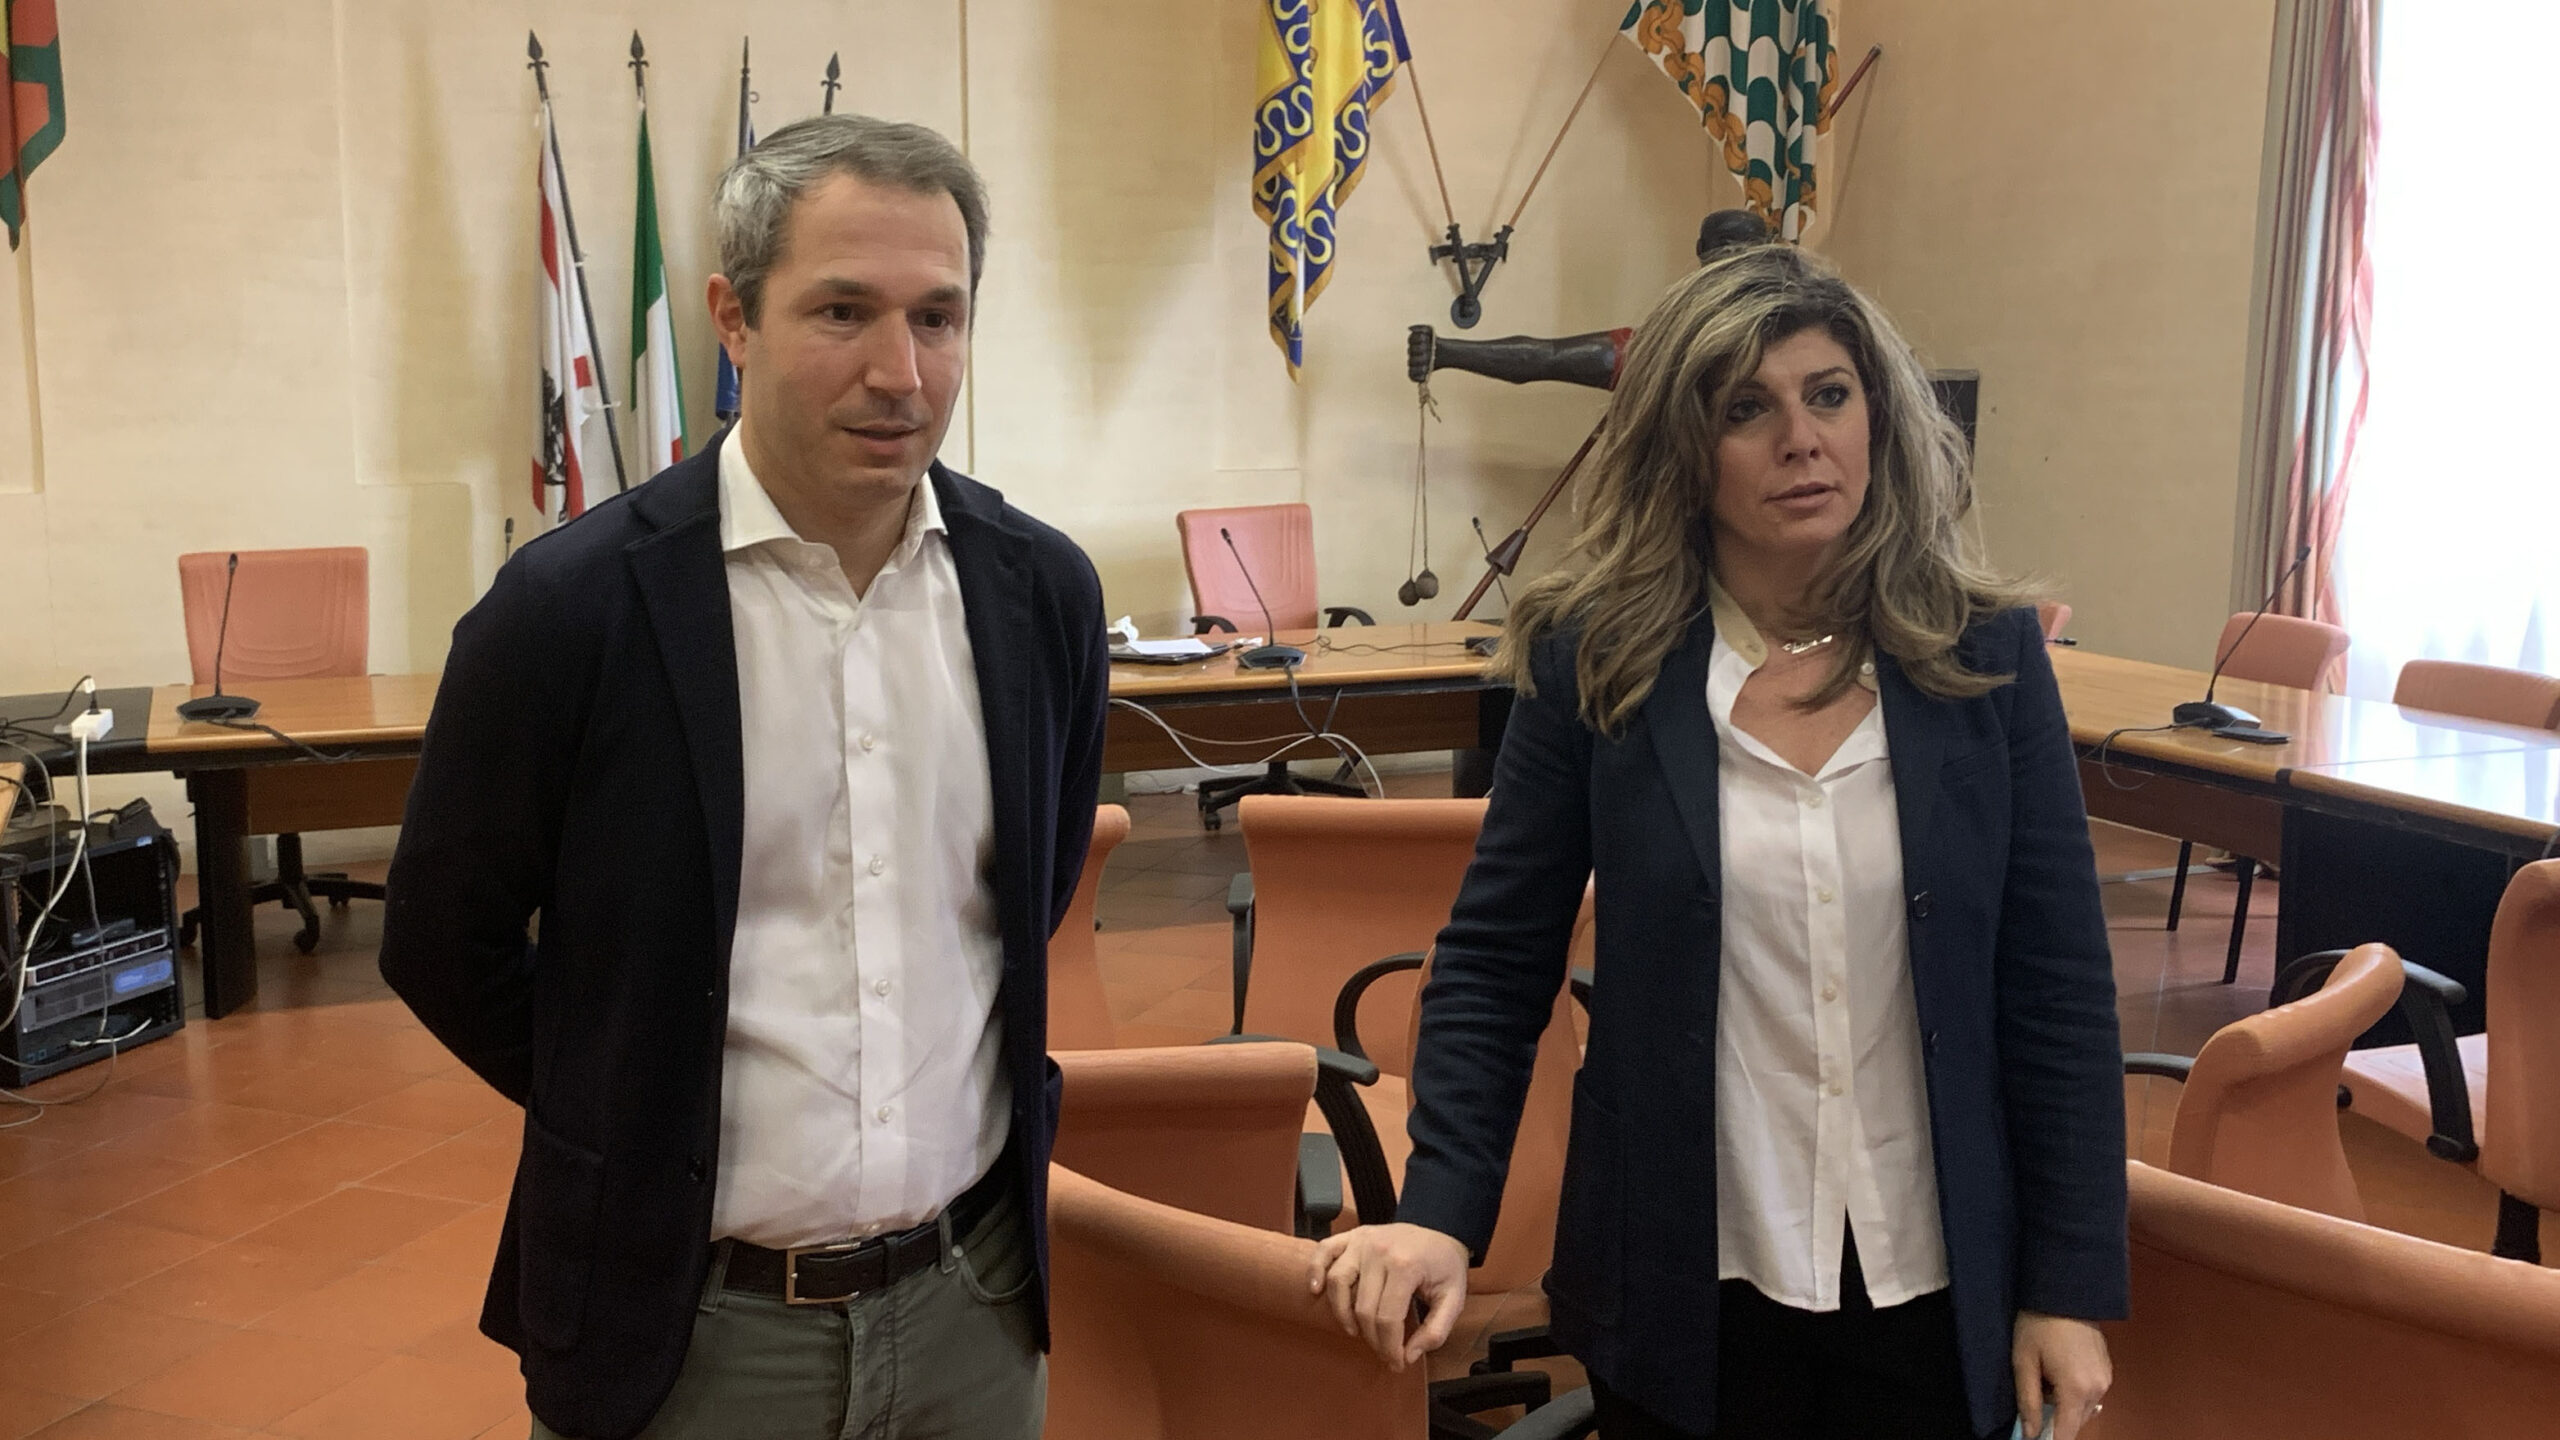 Scelgo Arezzo su Aisa Impianti: “Toni eccessivi nella comunicazione, intervenga l’Amministrazione comunale”